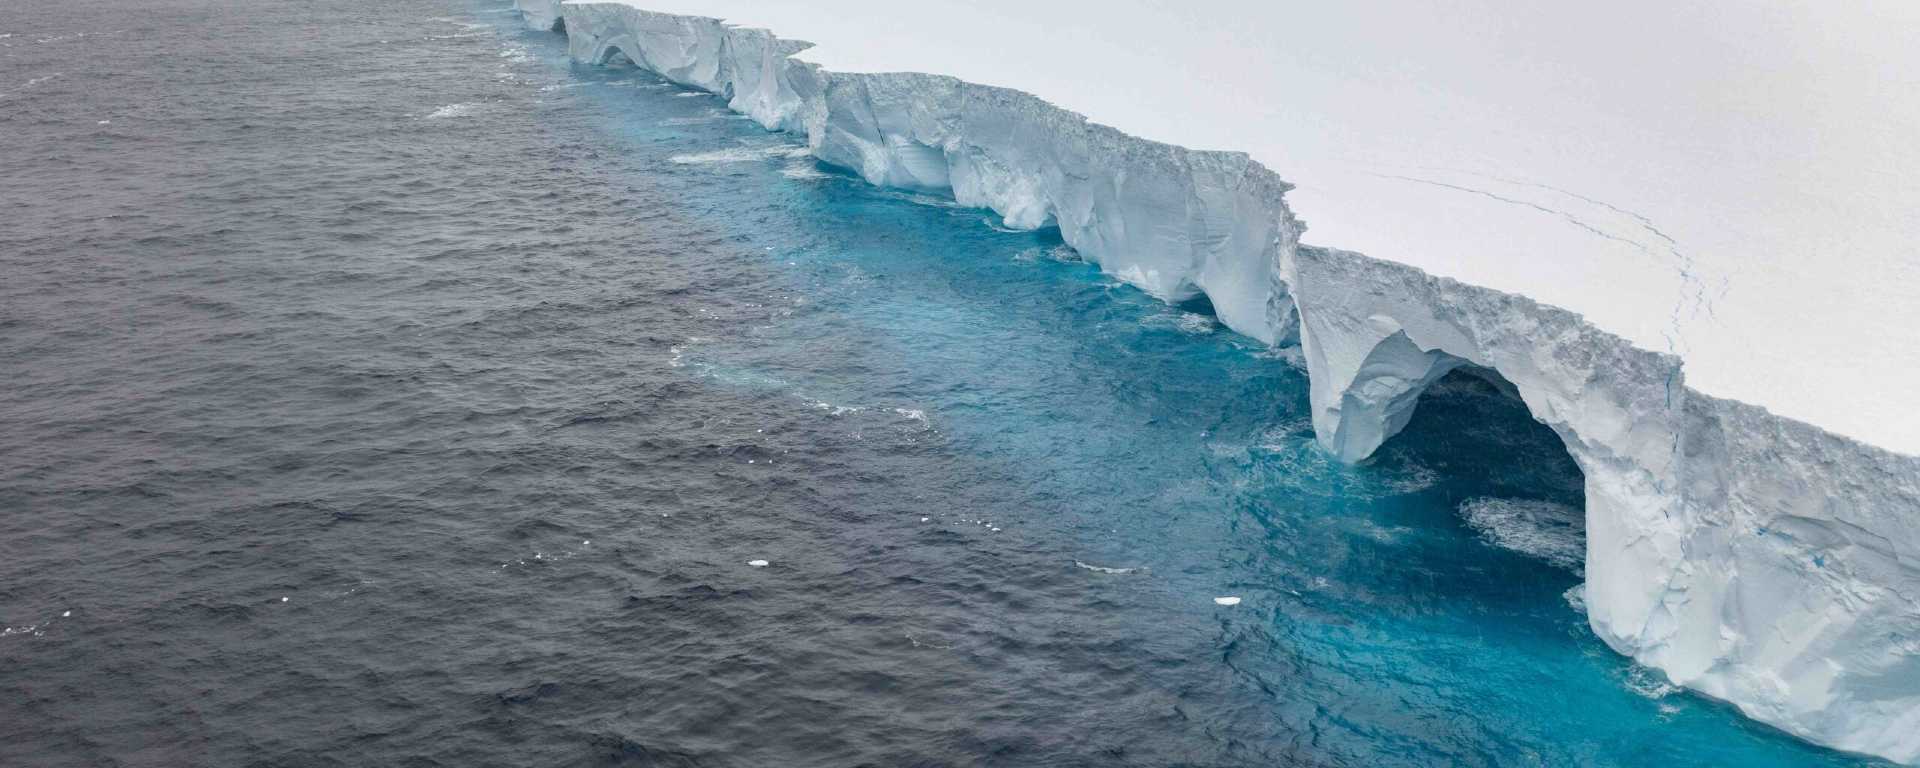 Le voyage de l’iceberg A23a, géant de glace entre Antarctique et océan